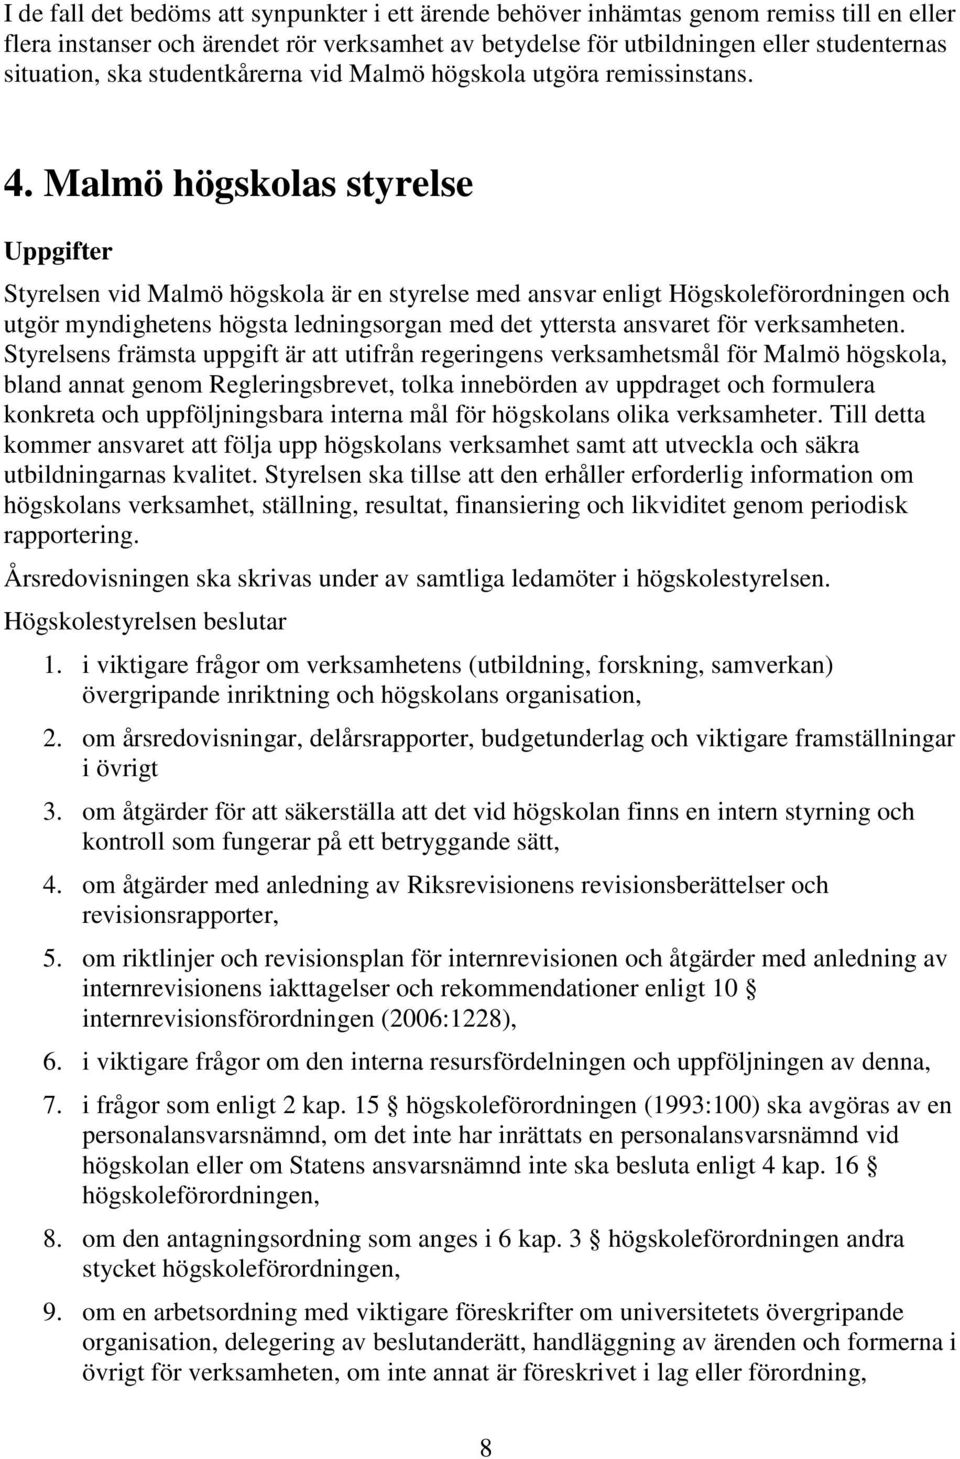 Malmö högskolas styrelse Uppgifter Styrelsen vid Malmö högskola är en styrelse med ansvar enligt Högskoleförordningen och utgör myndighetens högsta ledningsorgan med det yttersta ansvaret för